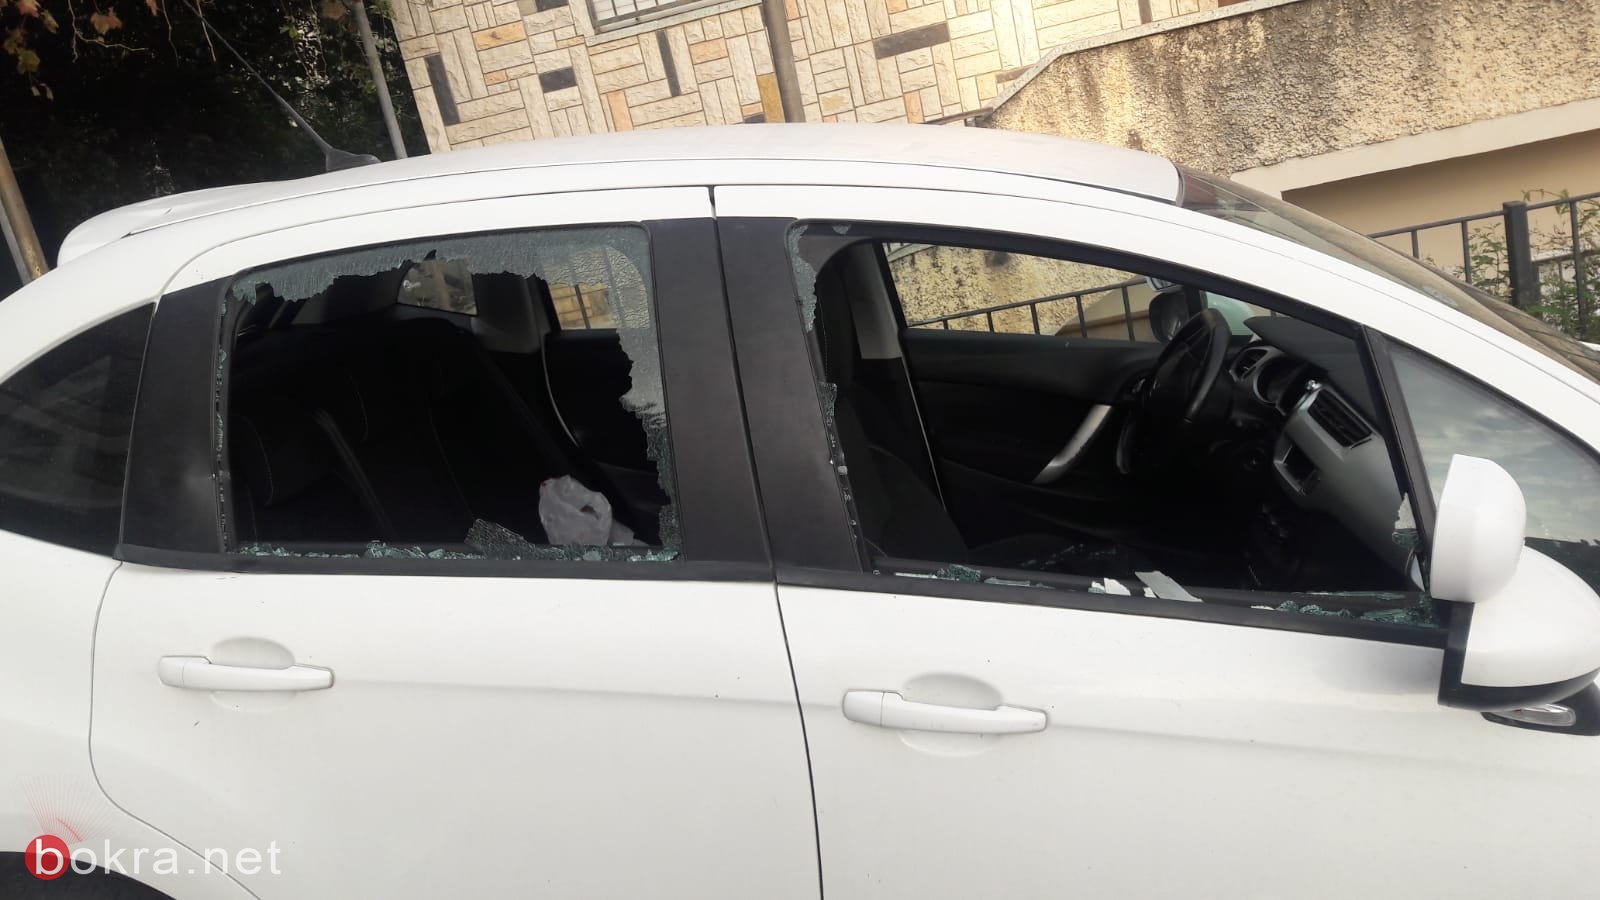 تكسير زجاج سيارة المواطن النصراوي فادي عجاوي ناشط في "ناصرتي"-2